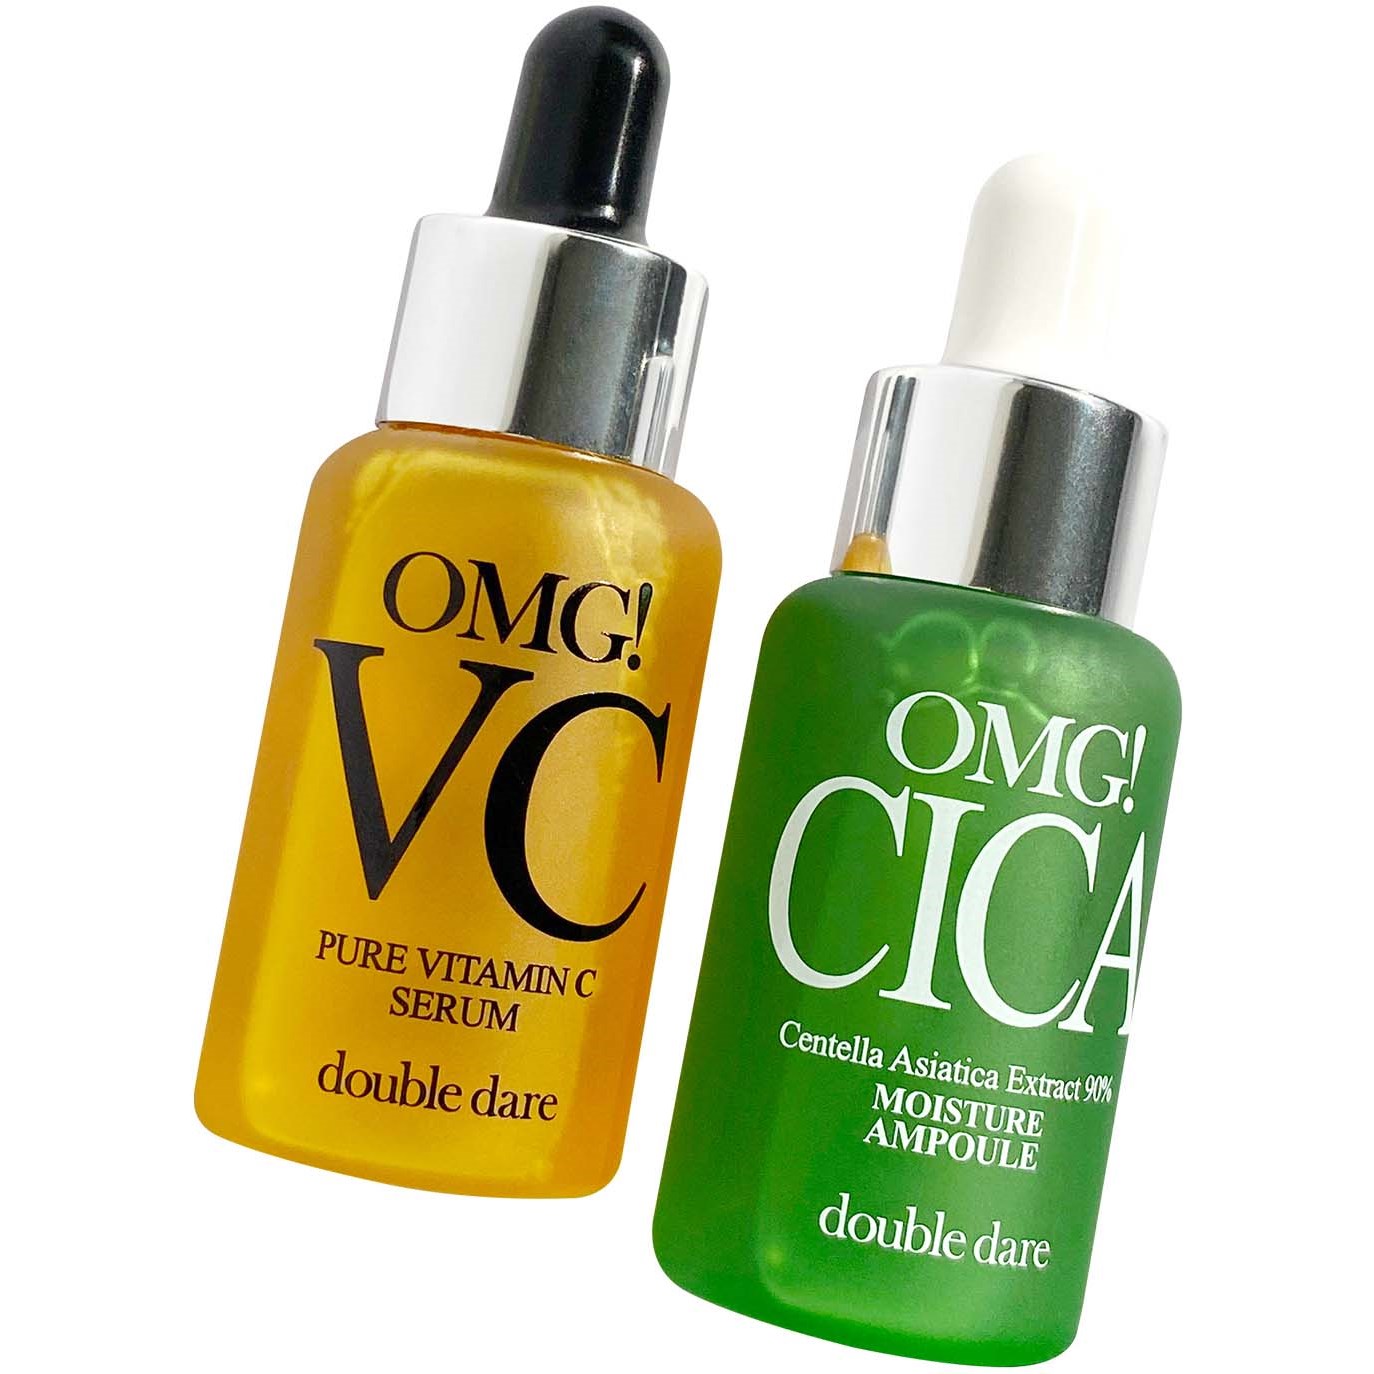 Bilde av Omg! Double Dare Dio Kit Vitamin C And Cica Serum